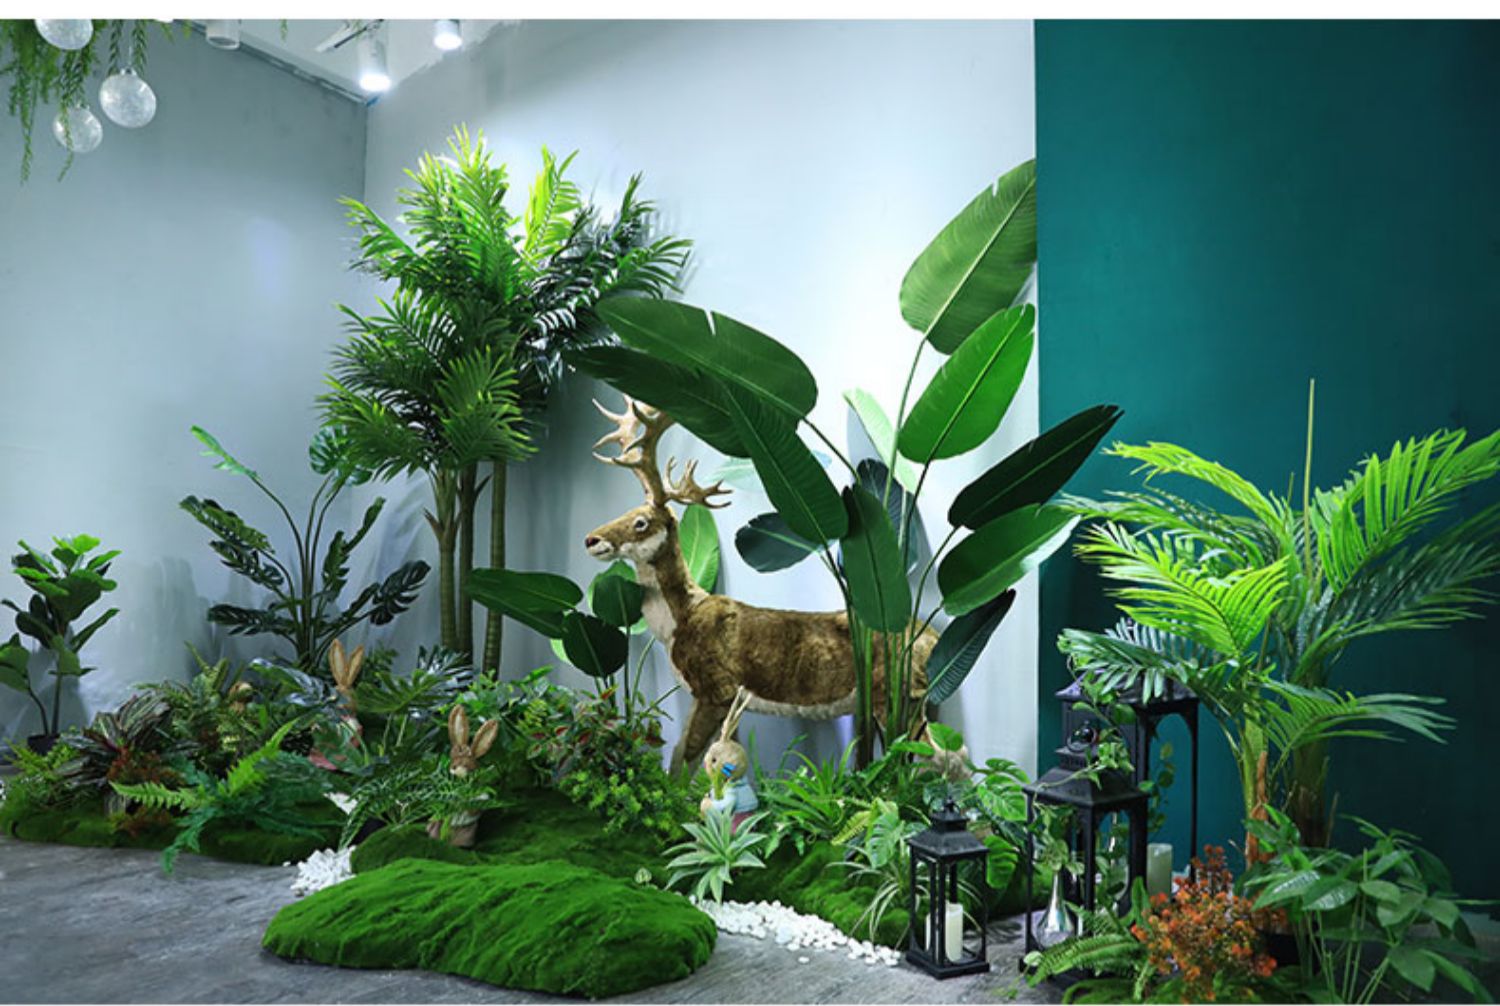 仿真绿植植物大型盆景造景客厅室内外墙角田园景观假植物装饰定制春意